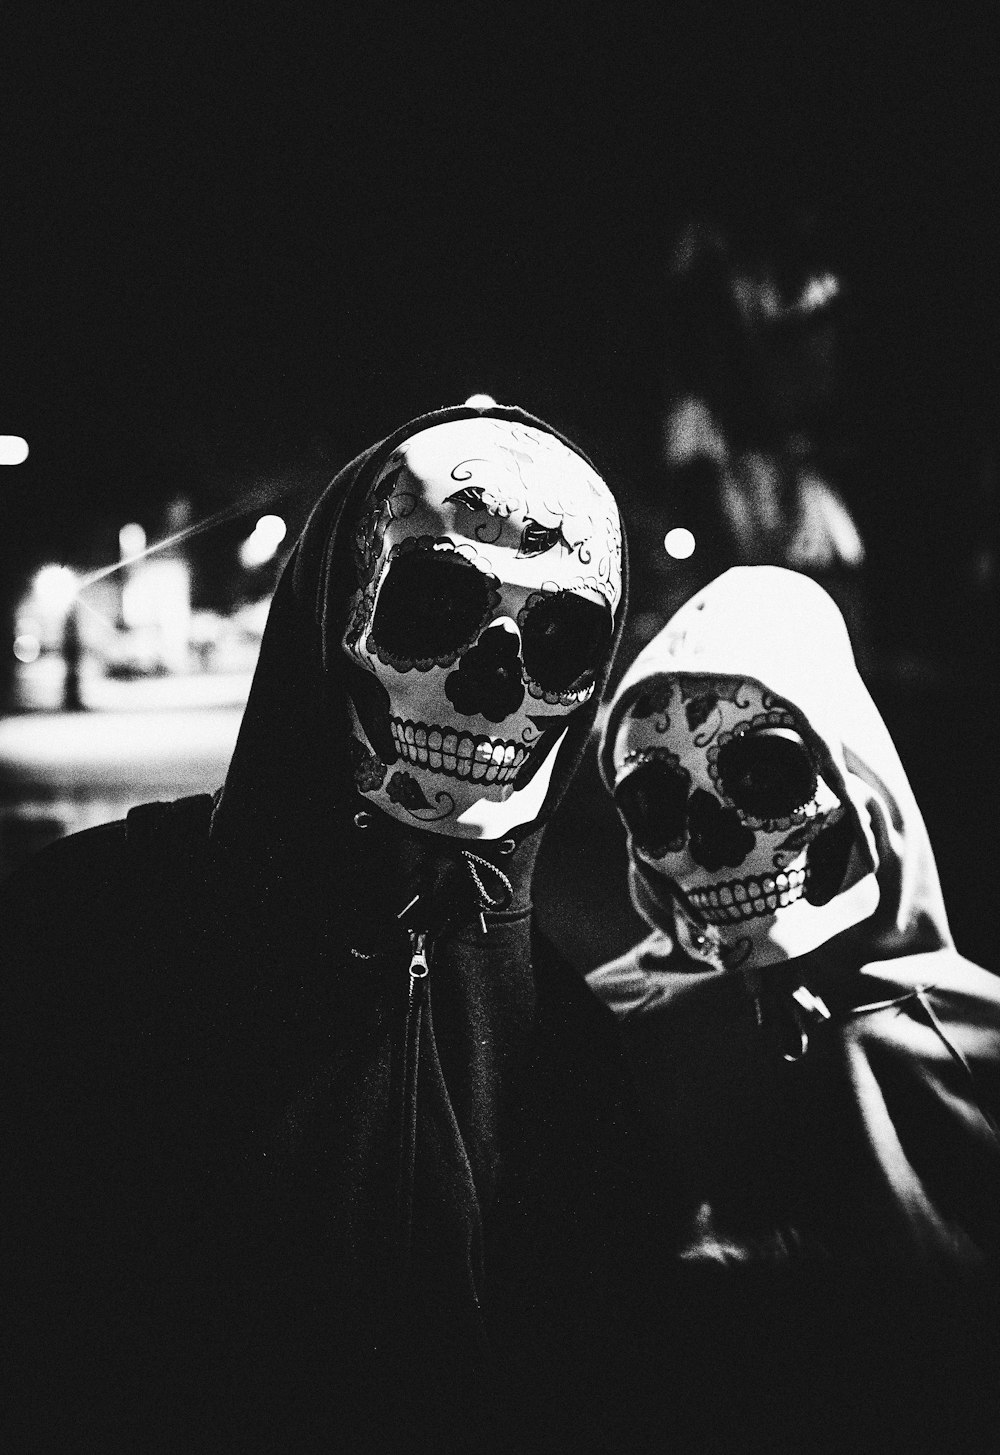 마스크를 착용 한 두 사람의 회색조 사진